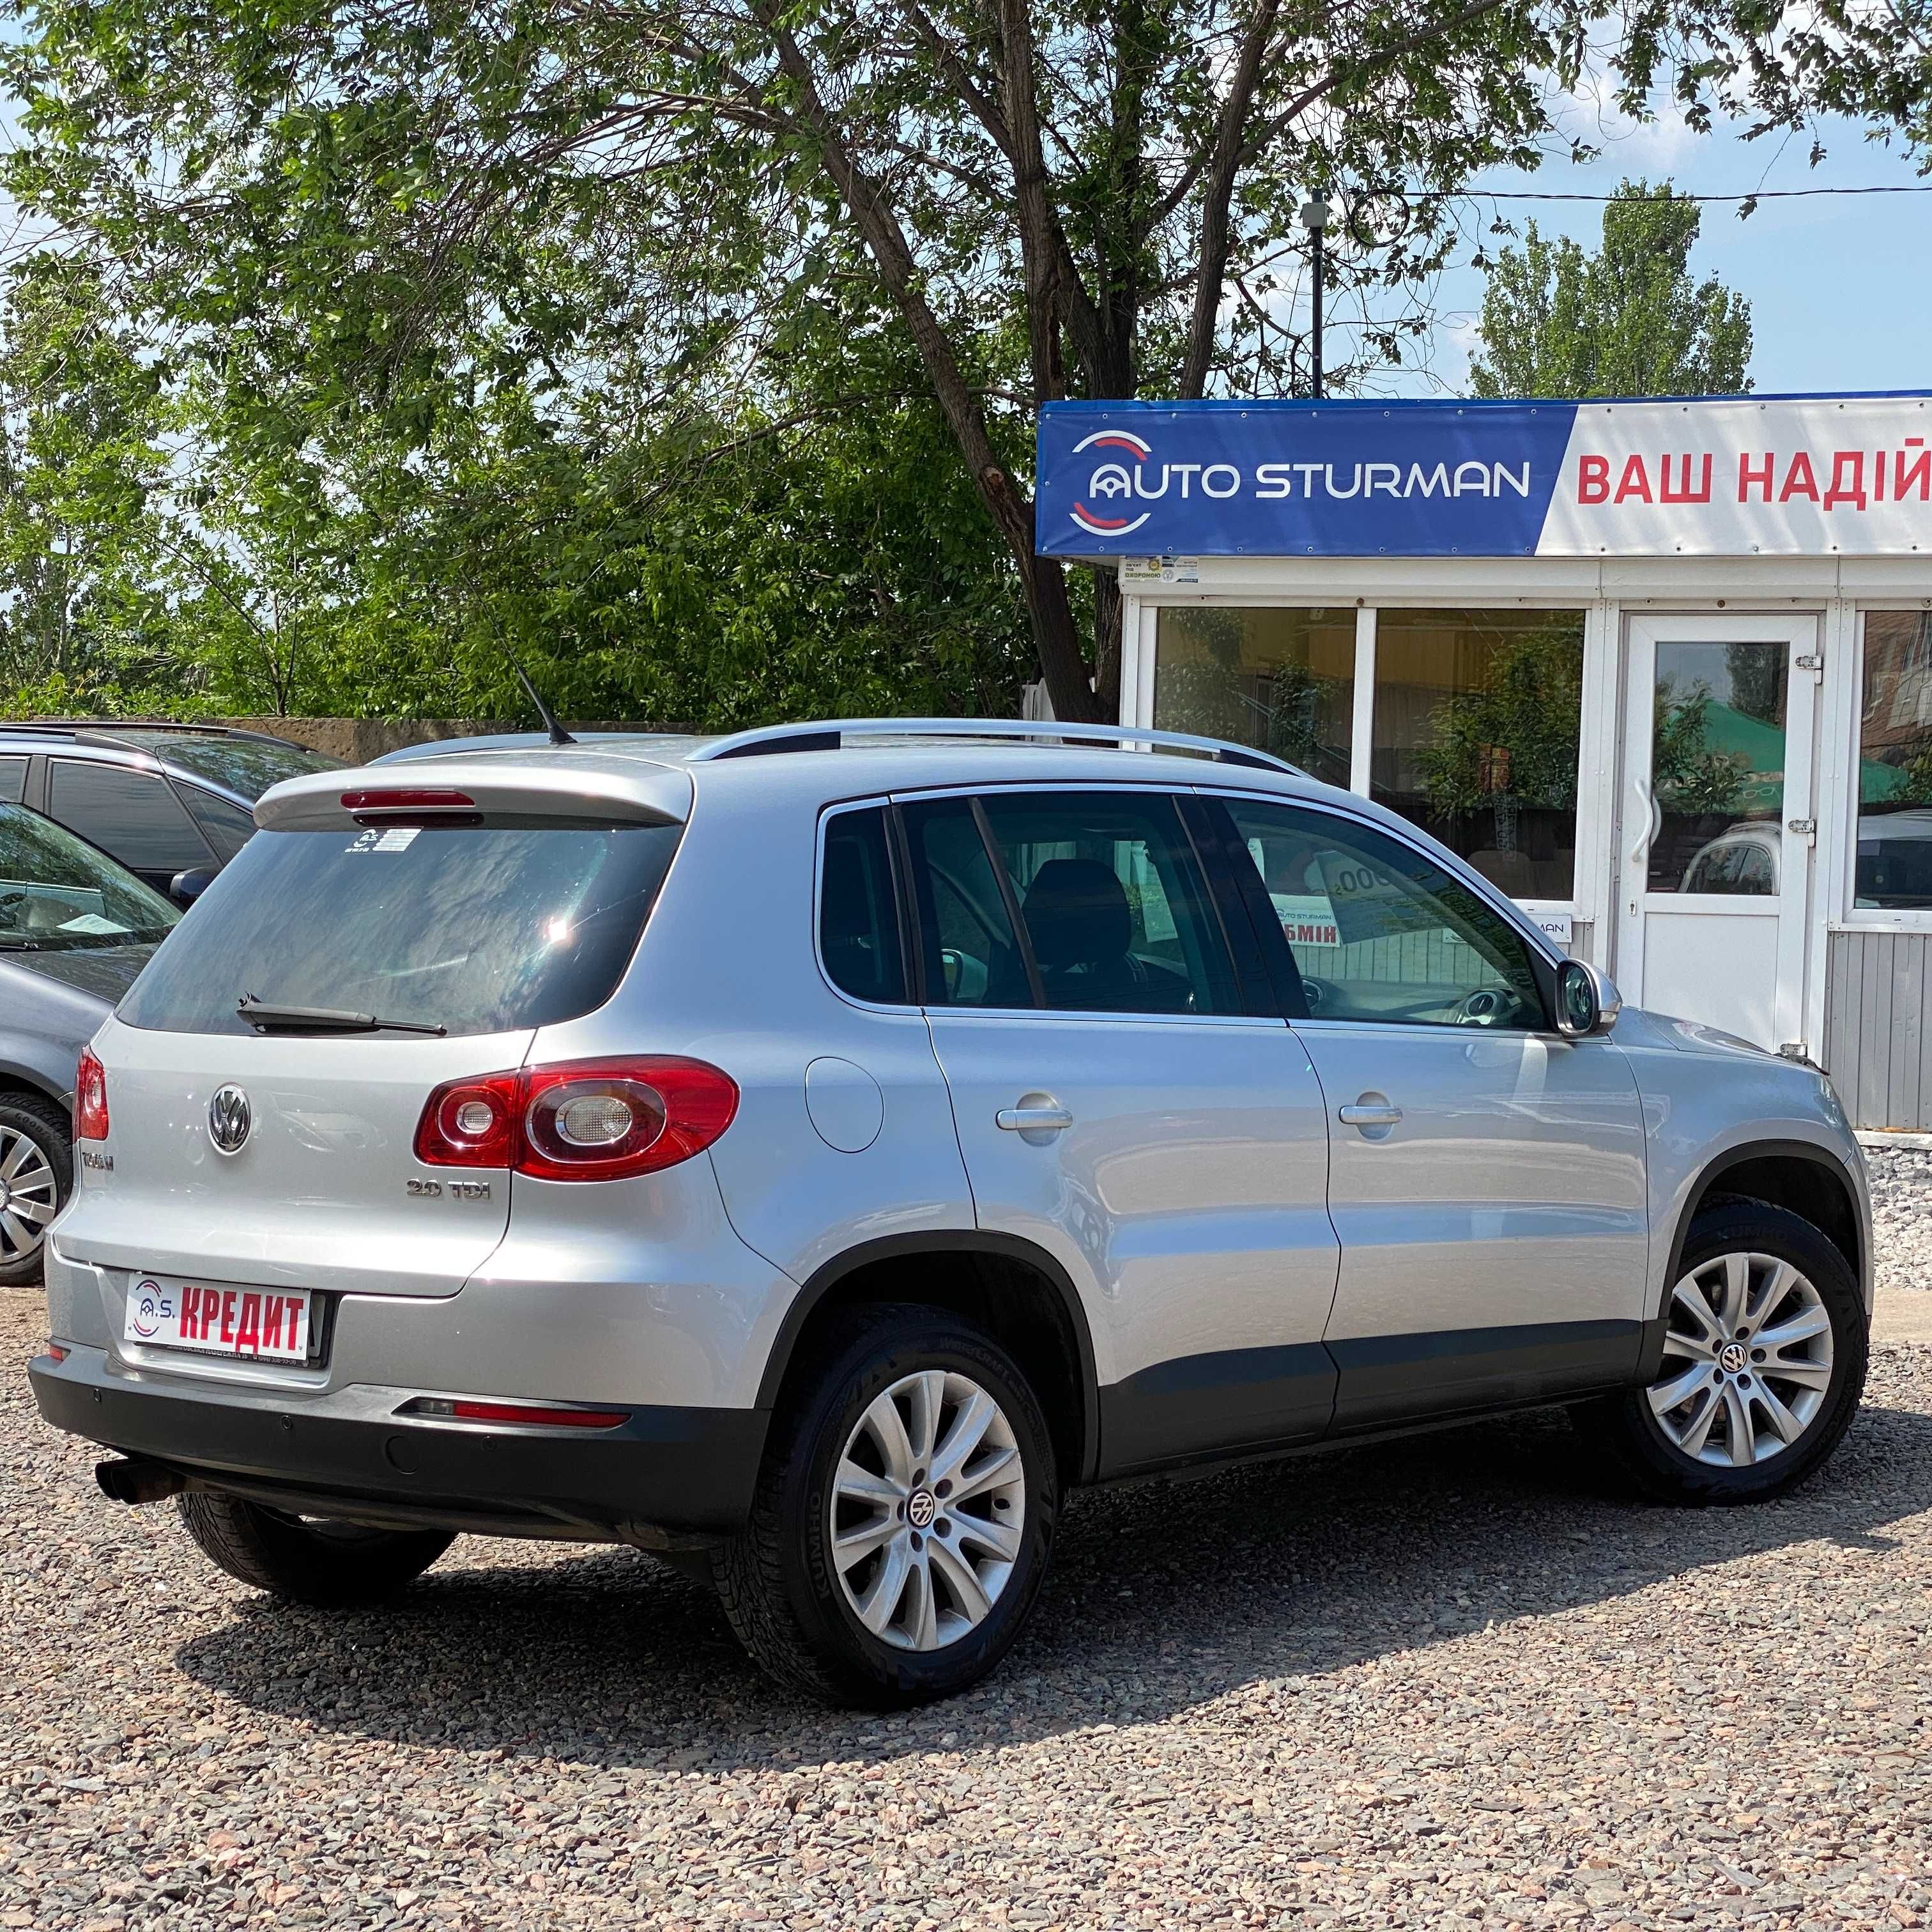 Продам Volkswagen Tiguan 2010 рік можлива розстрочка, кредит, обмін!